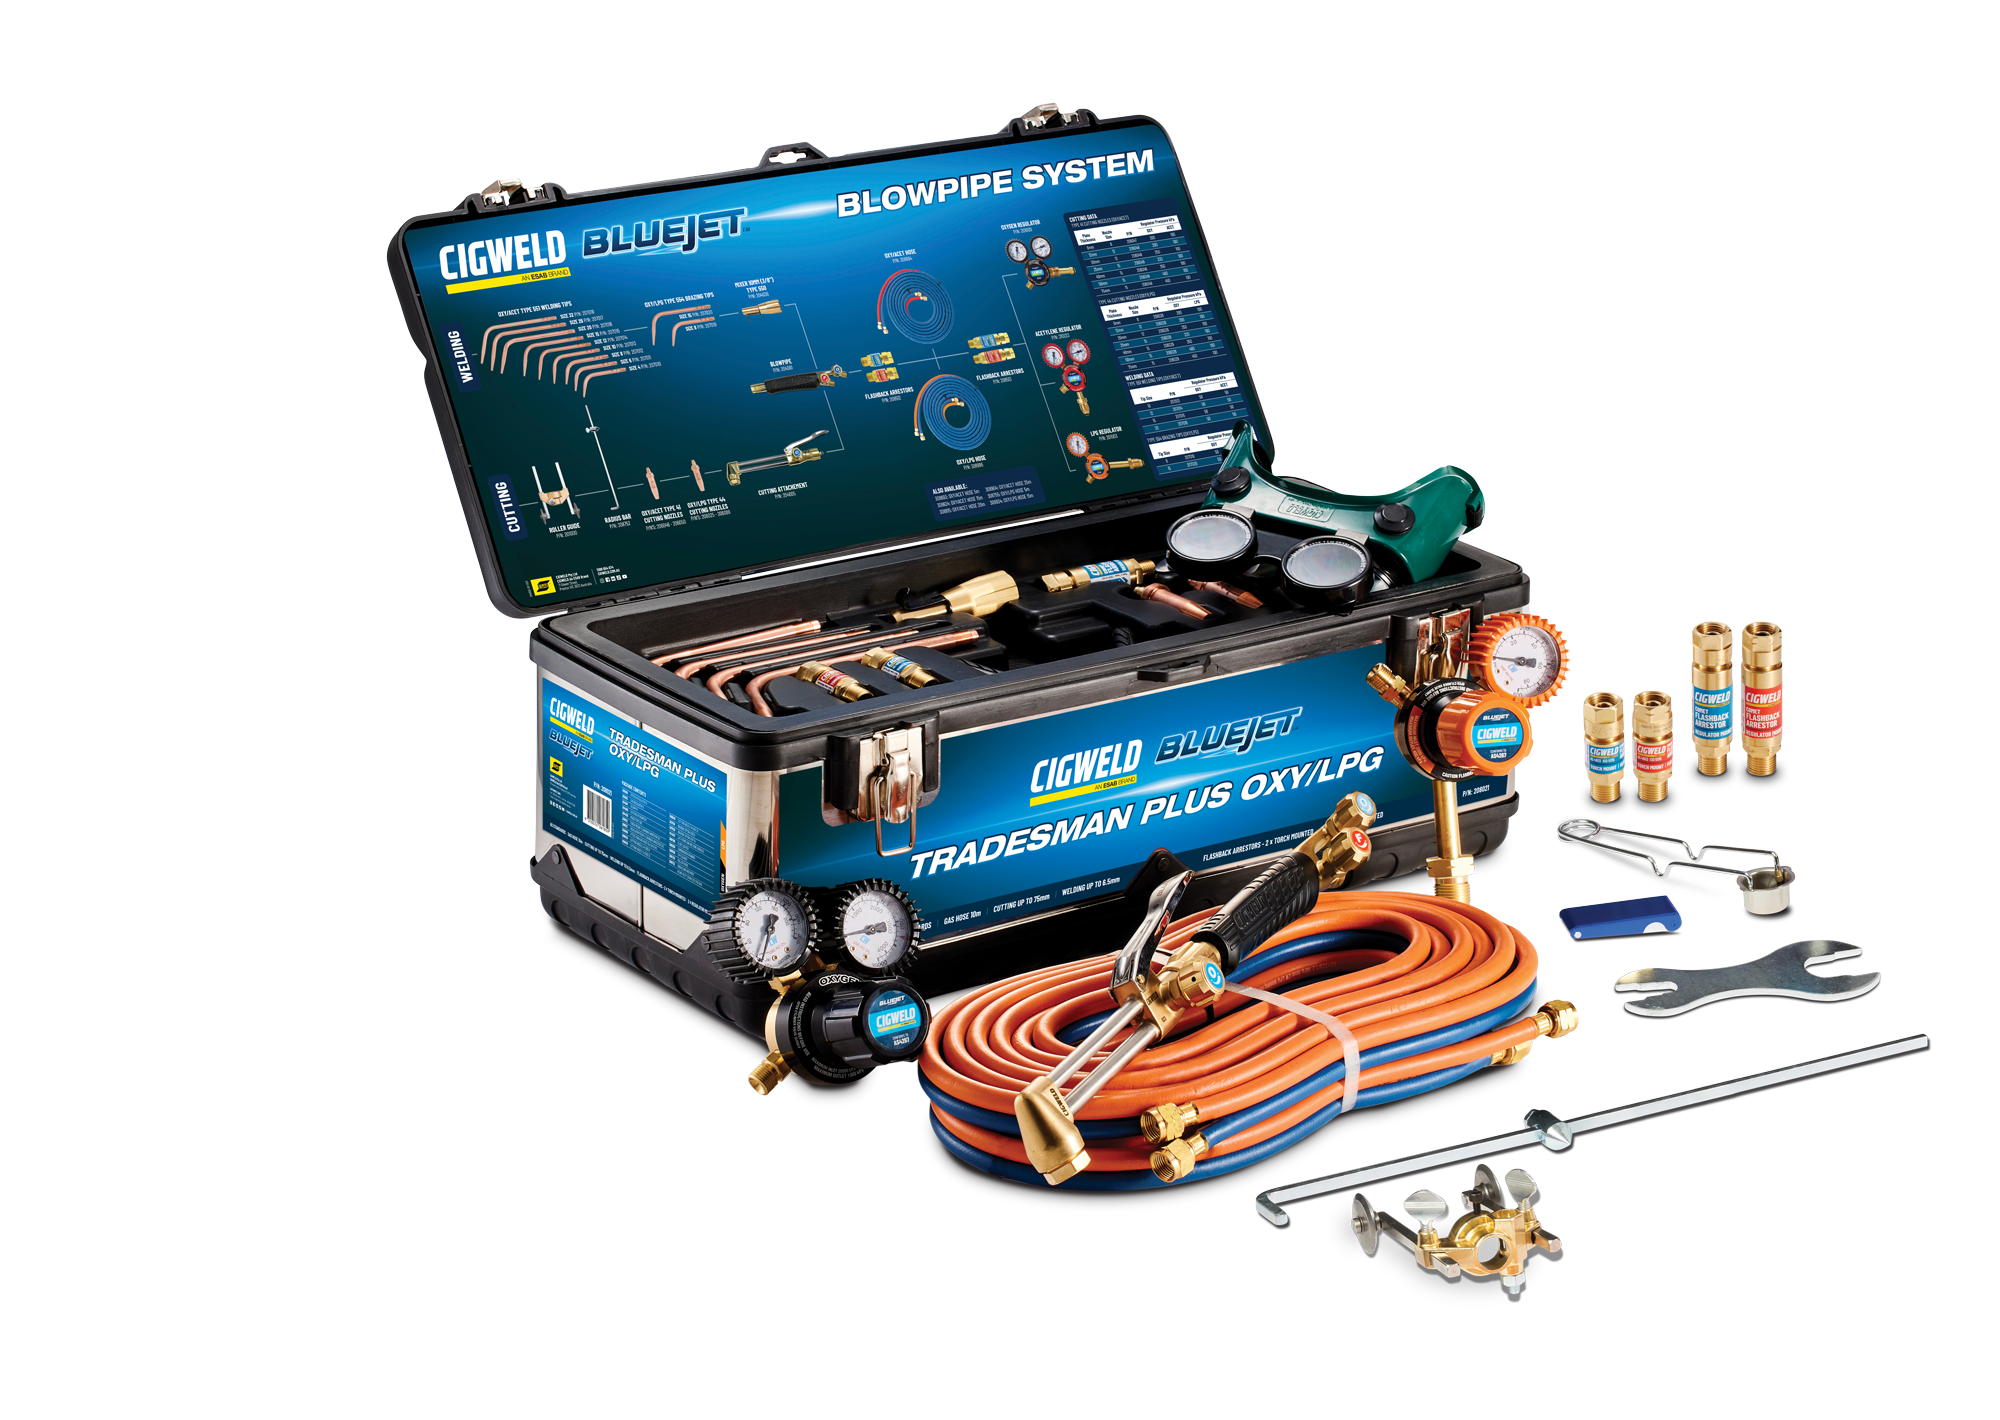 Cigweld BlueJet Tradesman Plus Oxygen/LPG Gas Kit